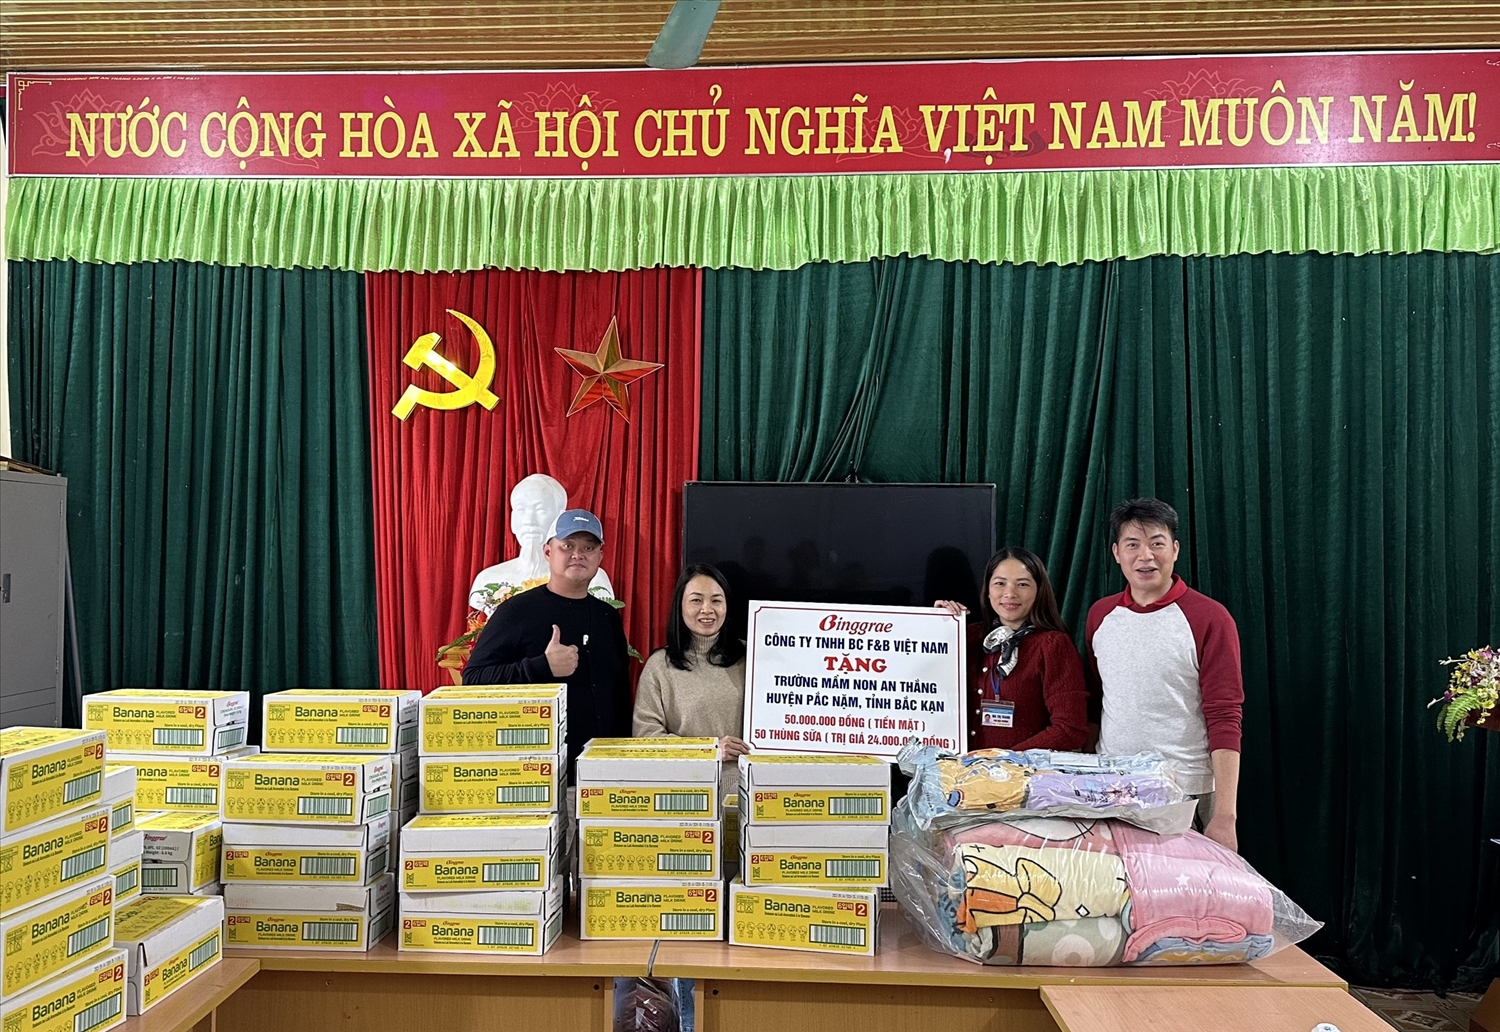 Đại diện đoàn thiện nguyện trao phần quà của Công ty TNHH BC F&B Việt Nam đến trường mầm non An Thắng, xã An Thắng, huyện Pắc Nặm, tỉnh Bắc Kạn